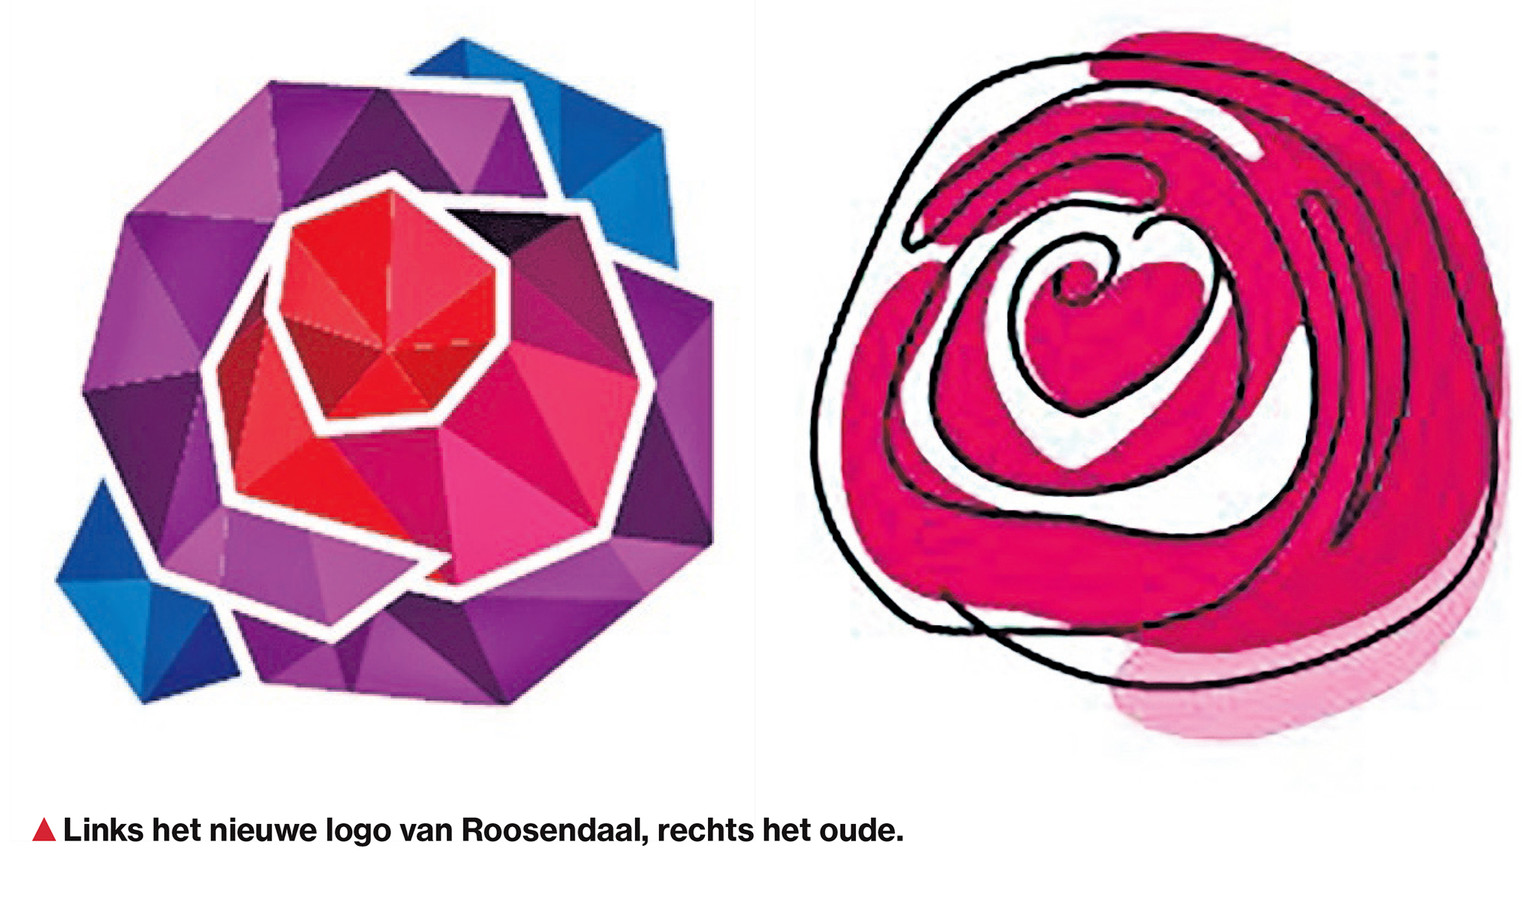 Roosendaal Omarmt Het Nieuwe Logo Nog Niet Kan Het Hartje In Het Nieuwe Logo Verwerkt Worden Foto Bndestem Nl